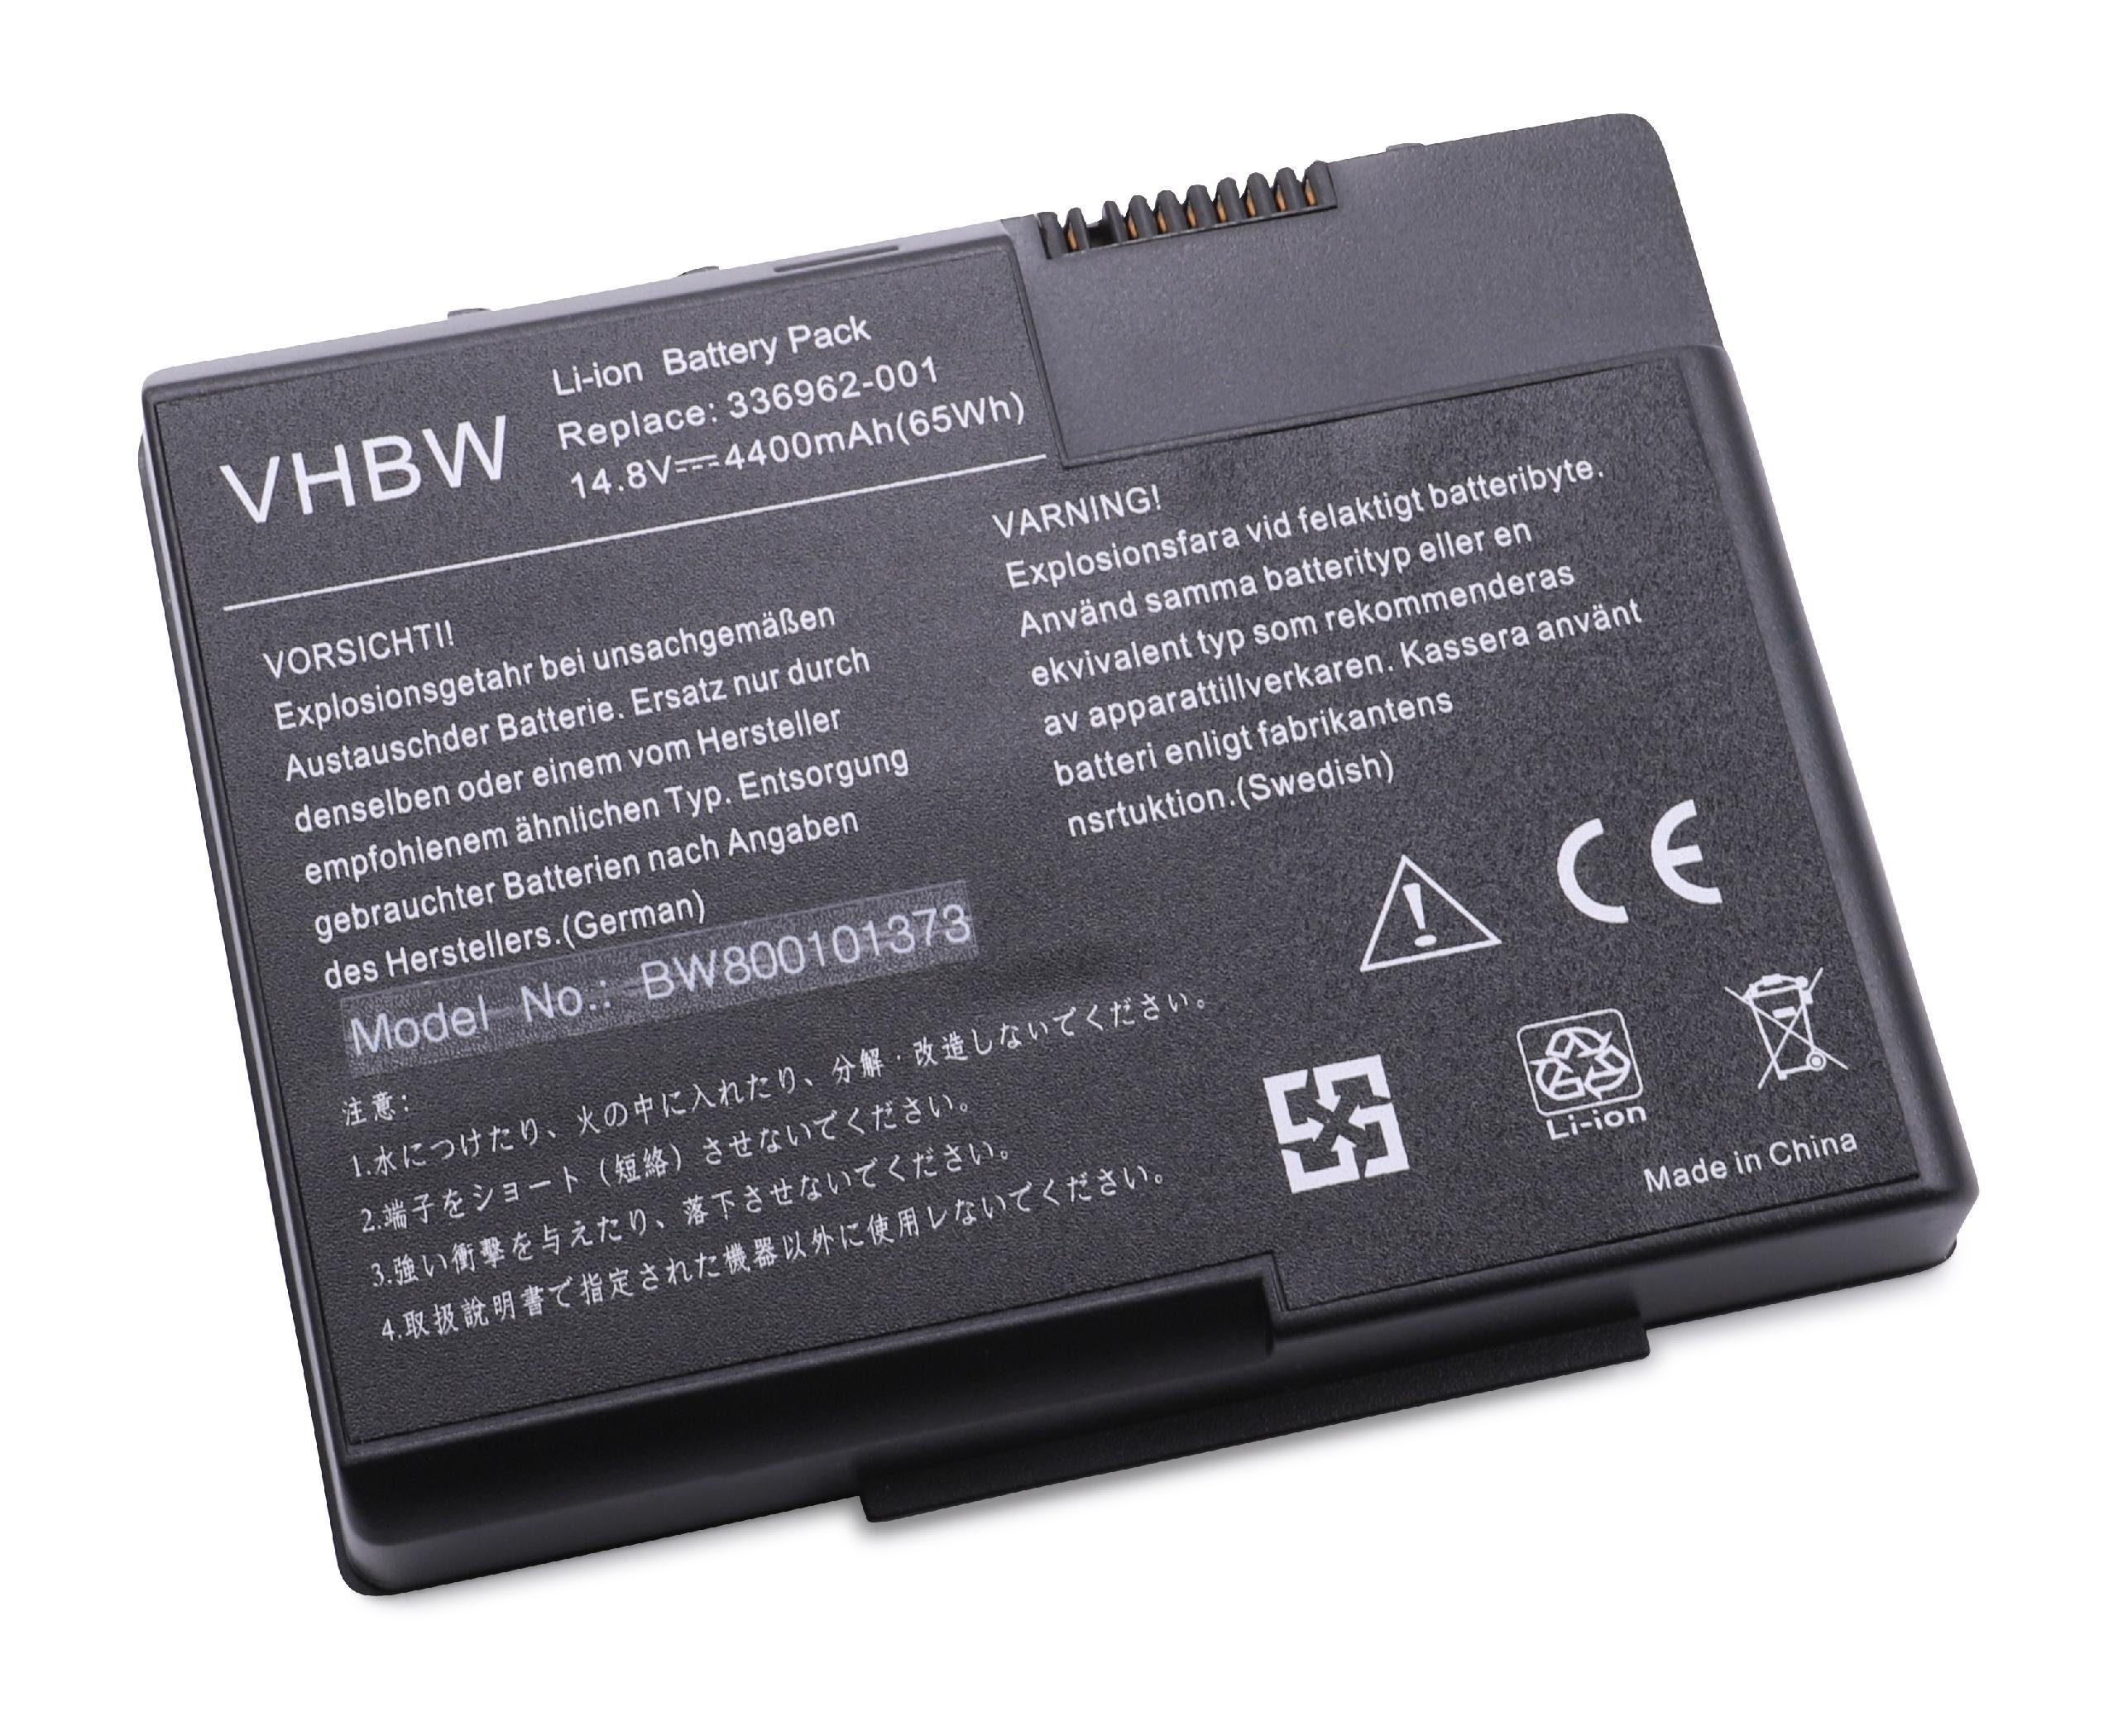 vhbw kompatibel mit HP (14,8 V) (PF843AS) X1480US Li-Ion Compaq Laptop-Akku (PF093UA), Presario 4400 mAh X1480XX